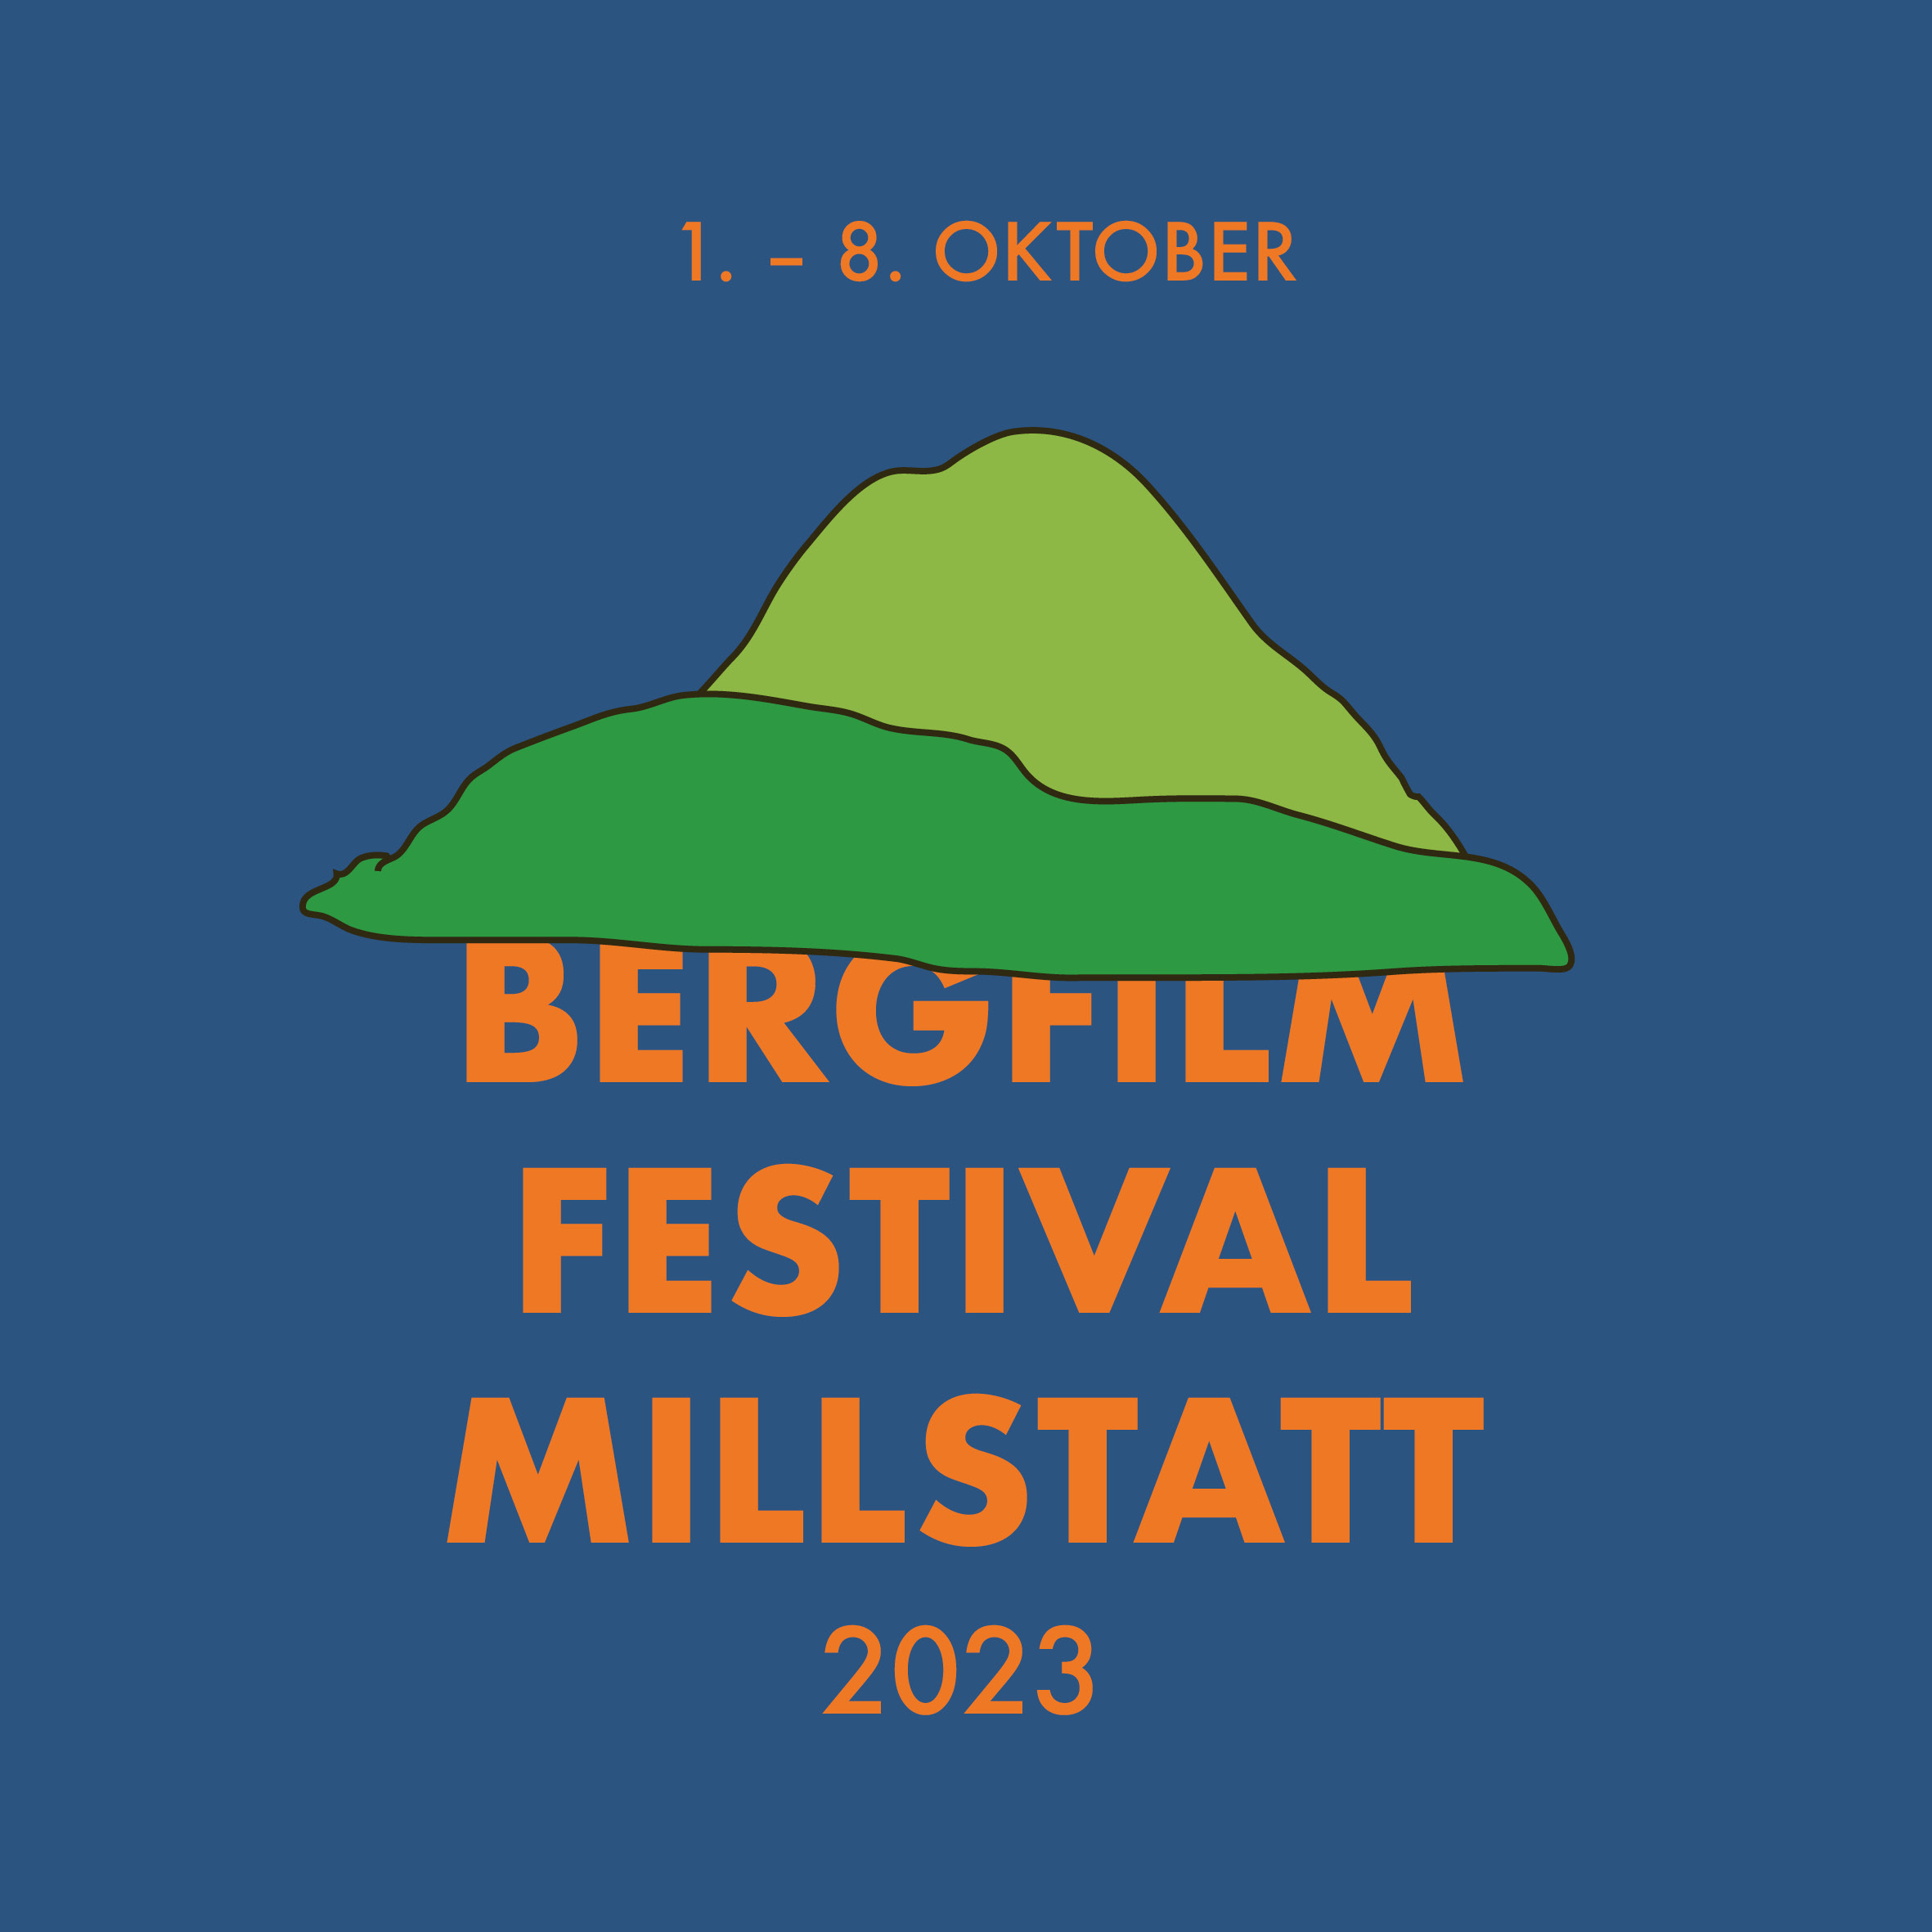 Bergfilmfestival Millstatt | 1. – 8. Oktober 2023 | Kino Cafe Millstatt